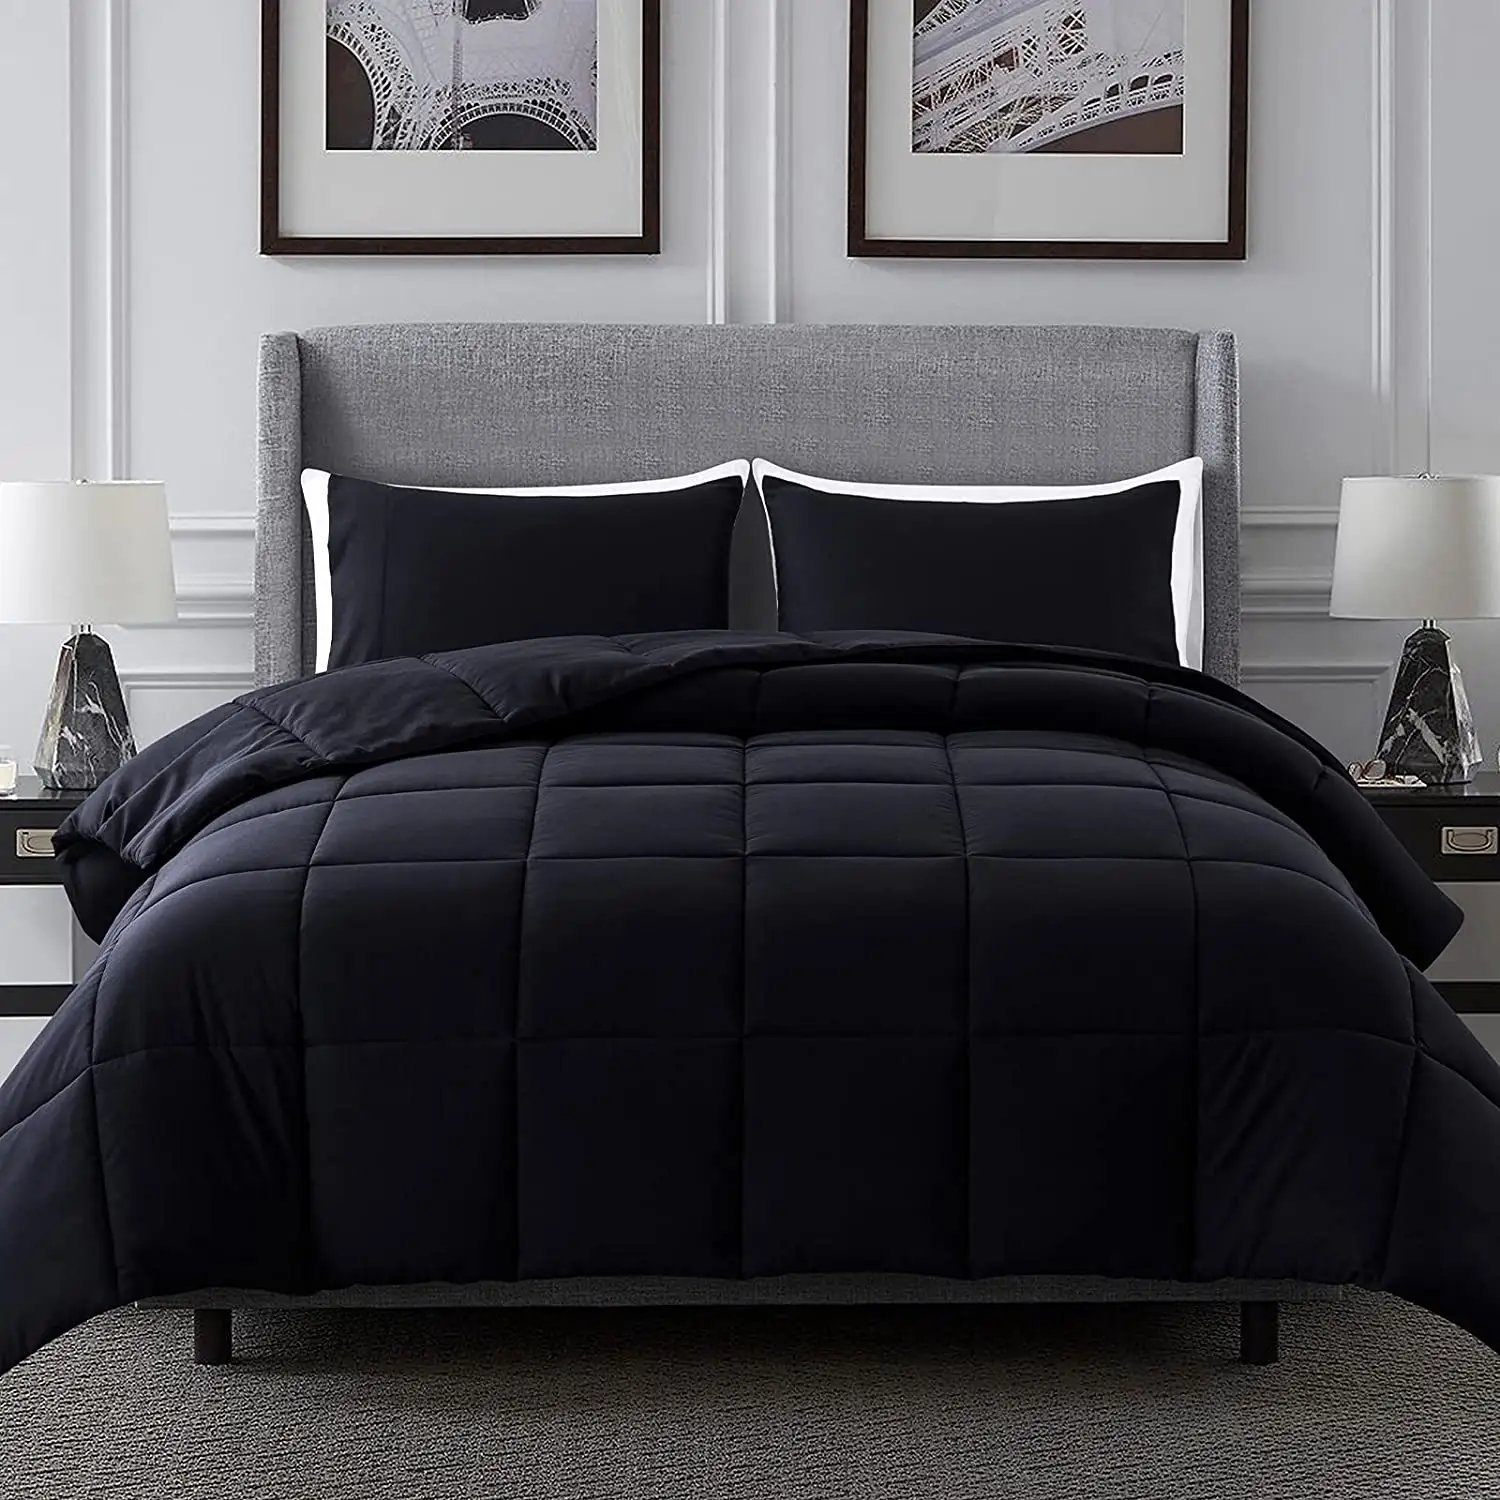 Grosir selimut katun Hotel Microfiber hitam mewah setelan selimut quilt khusus selimut ukuran Queen King selimut nyaman